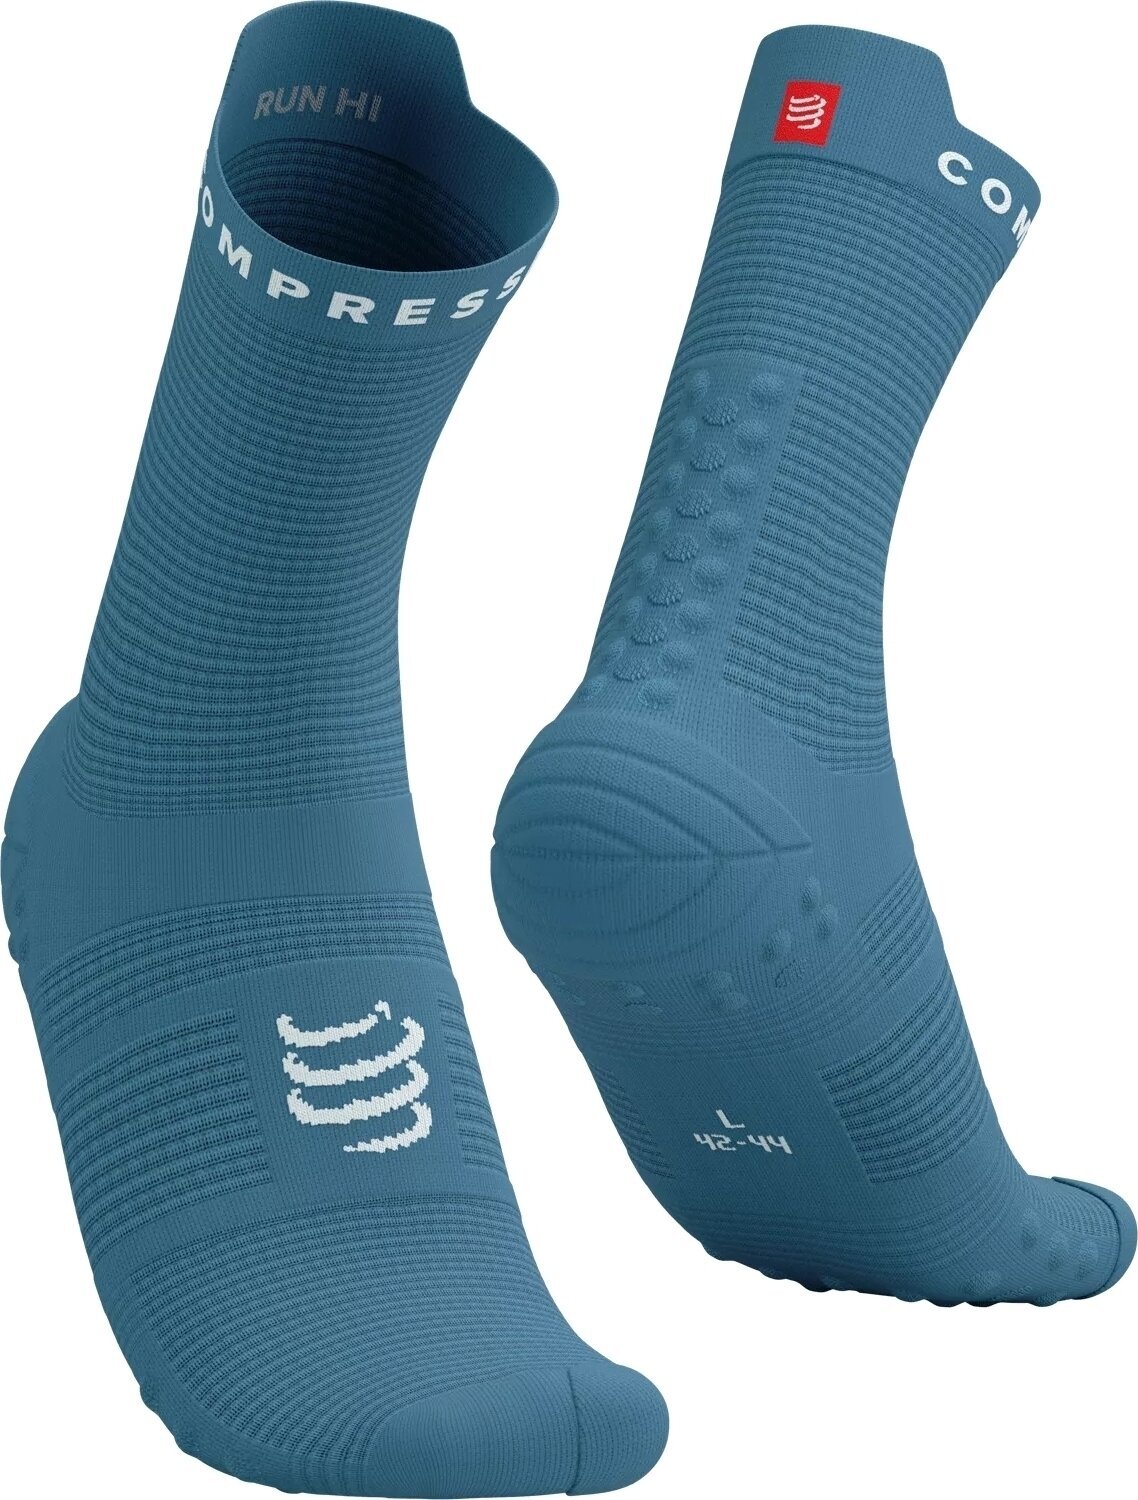 Running socks
 Compressport Pro Racing Socks V4.0 Run High Niagara/White T3 Running socks